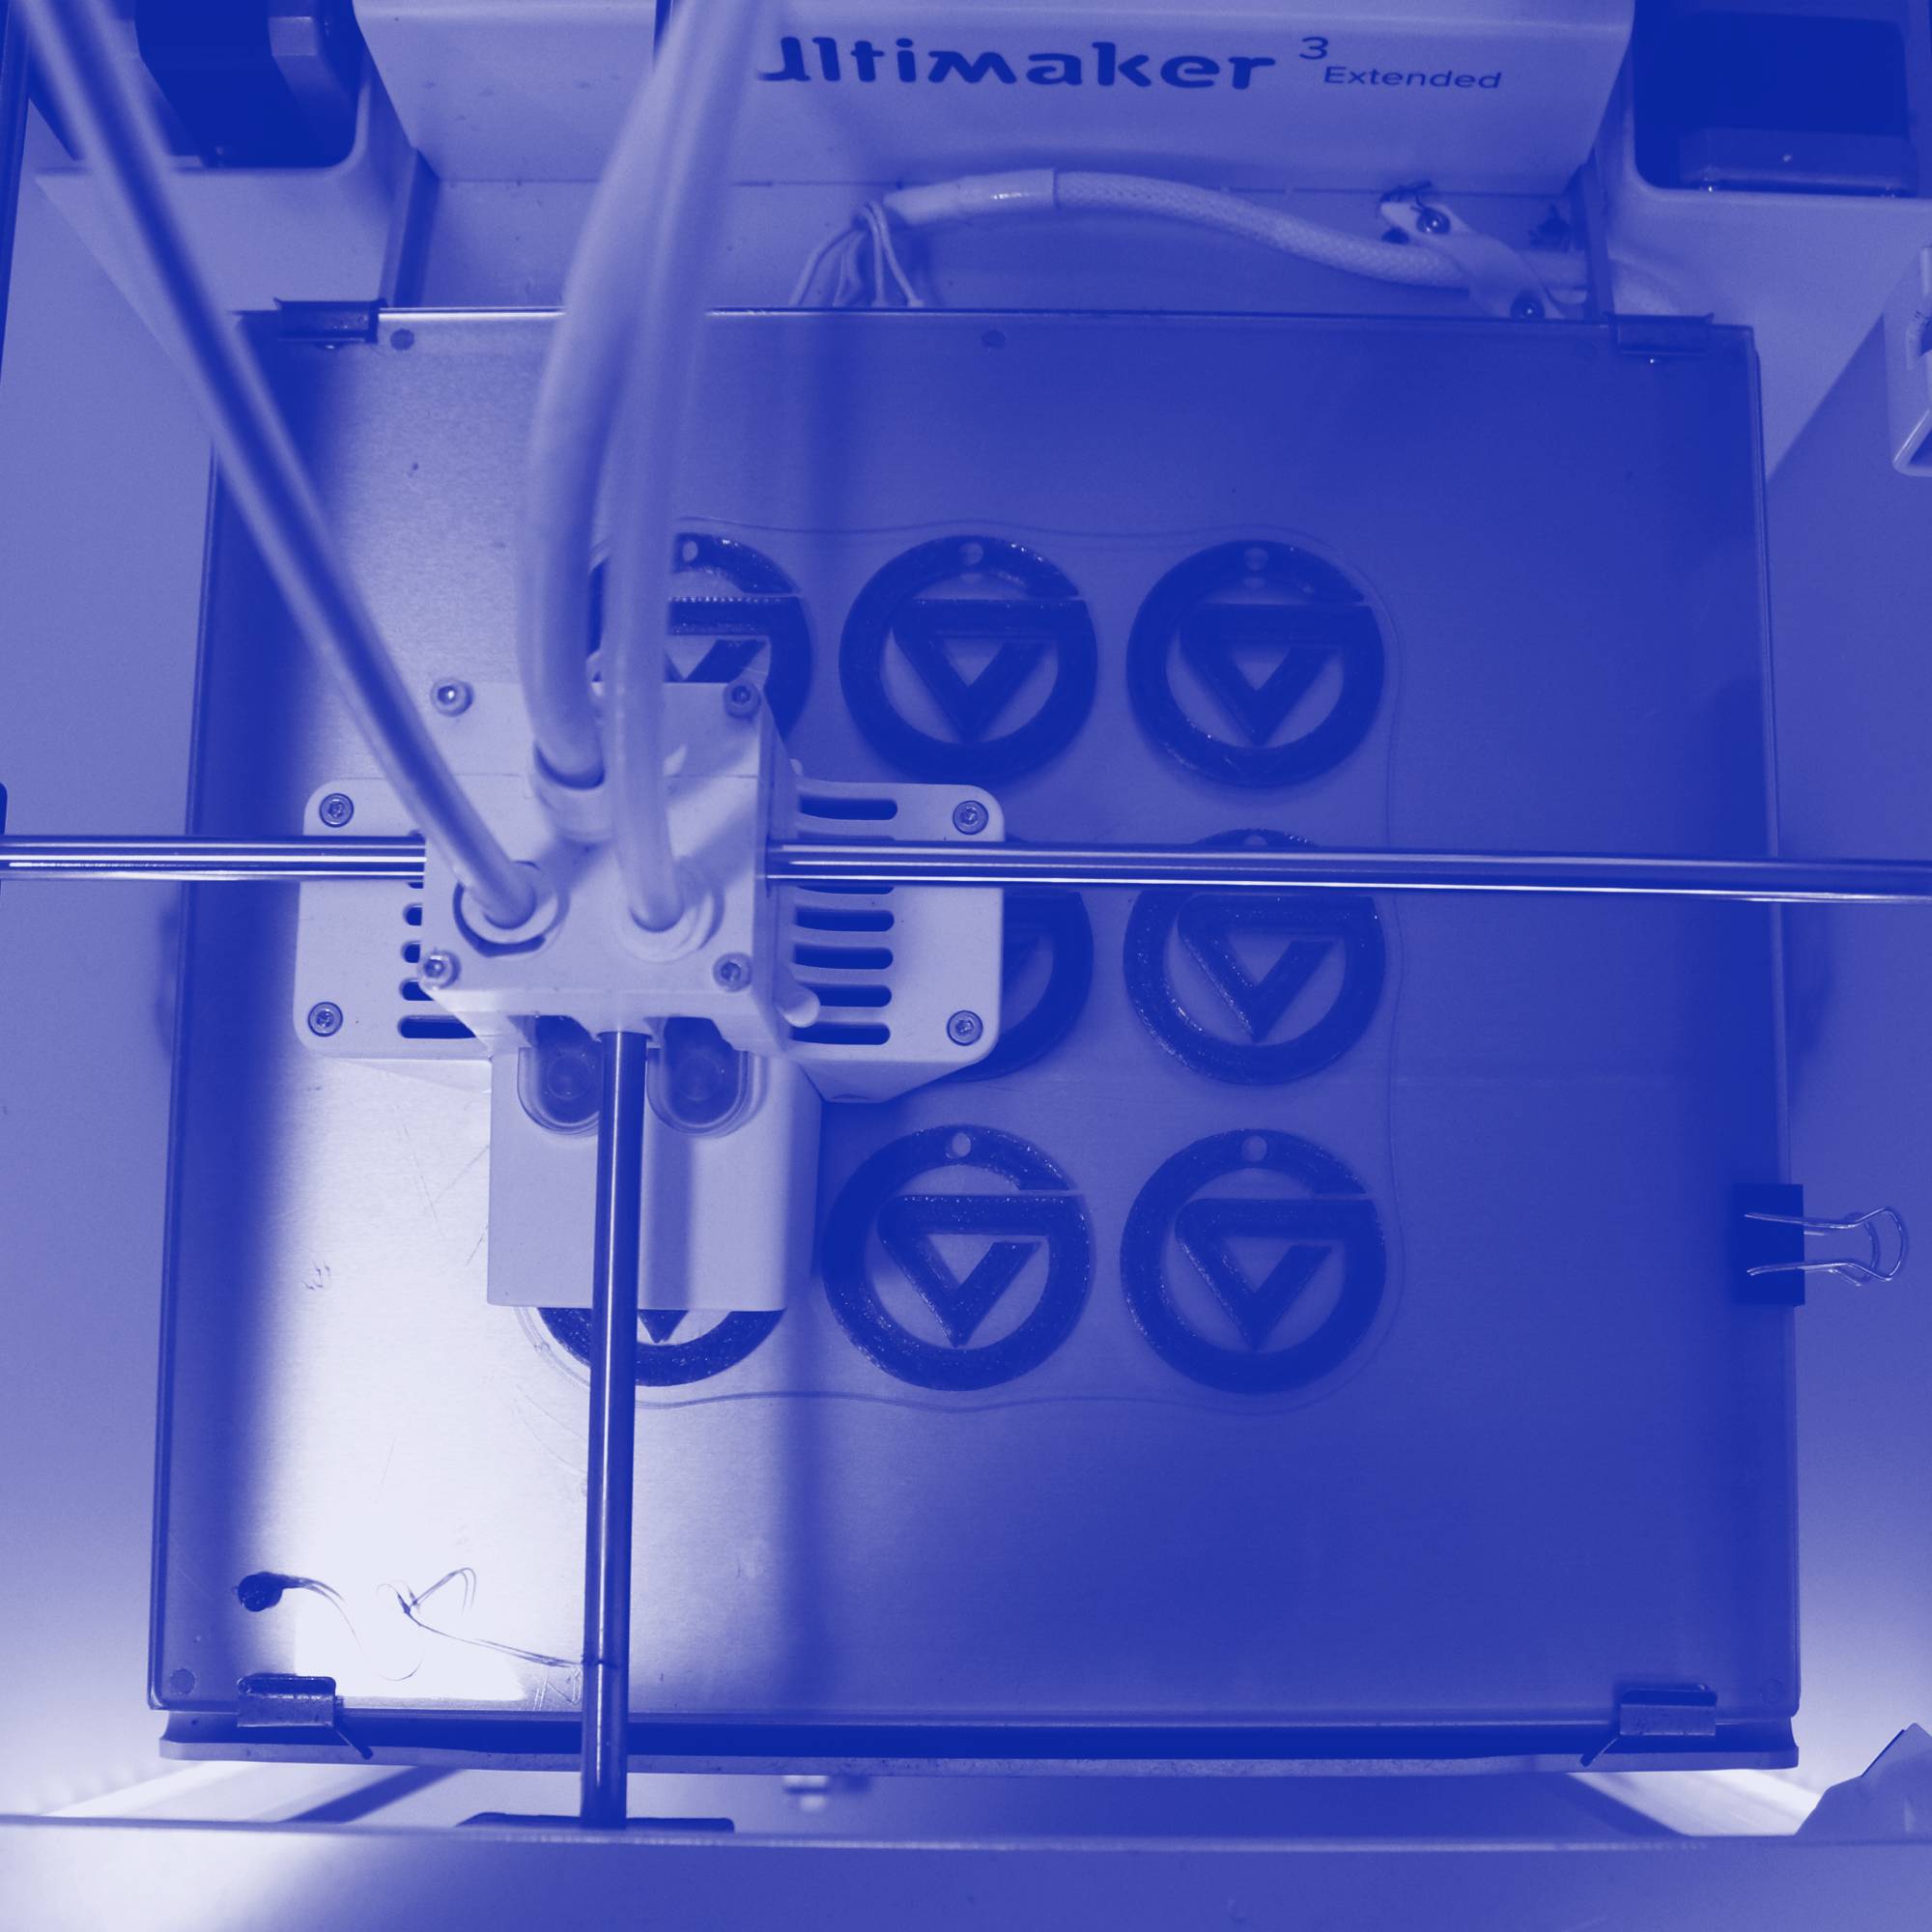 A 3D printer printing GVSU logos